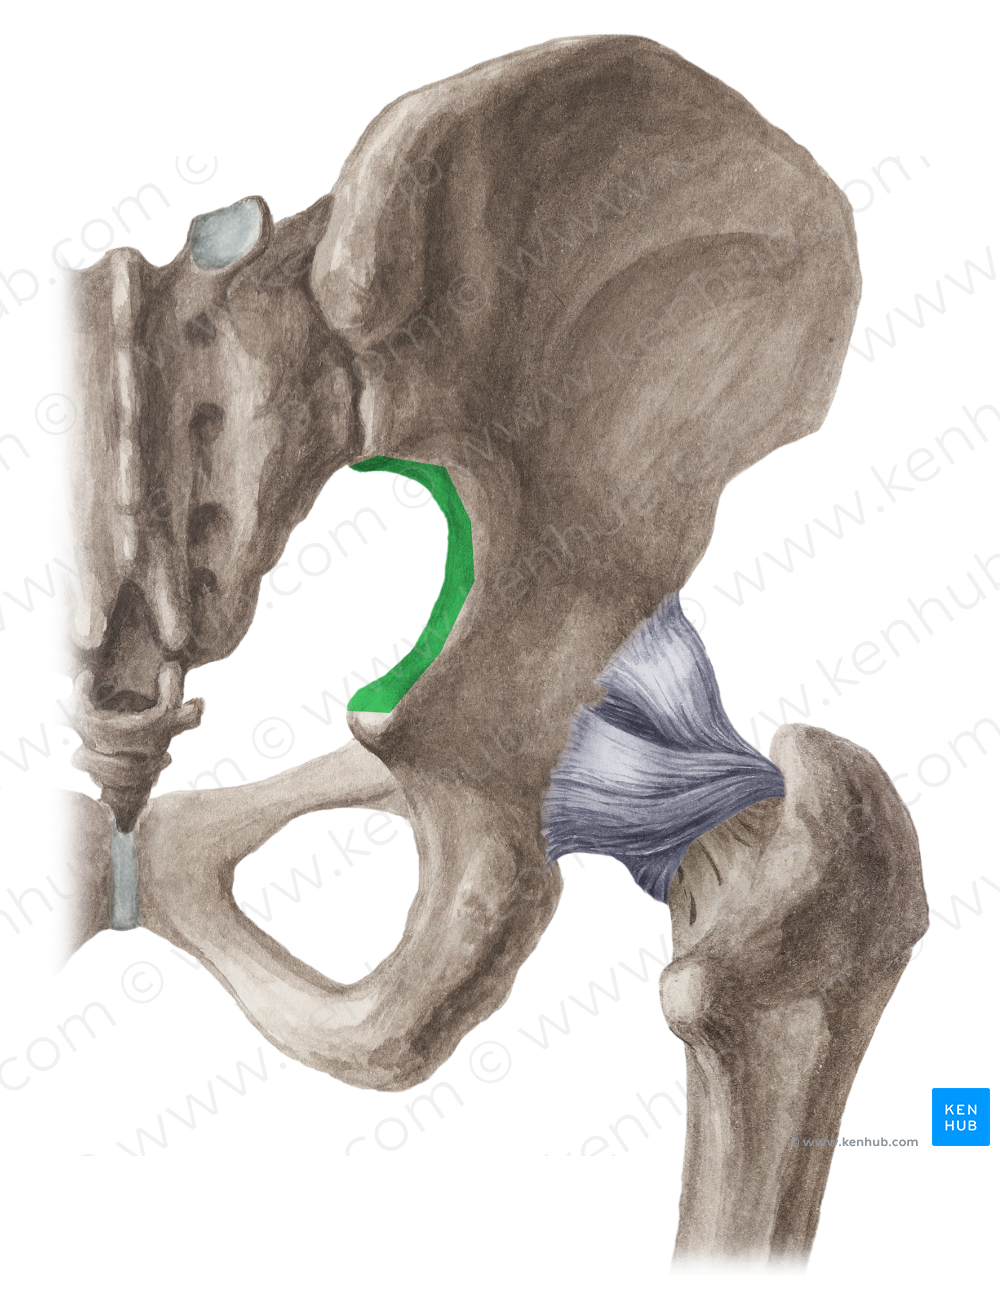 Greater sciatic notch of hip bone (#4291)